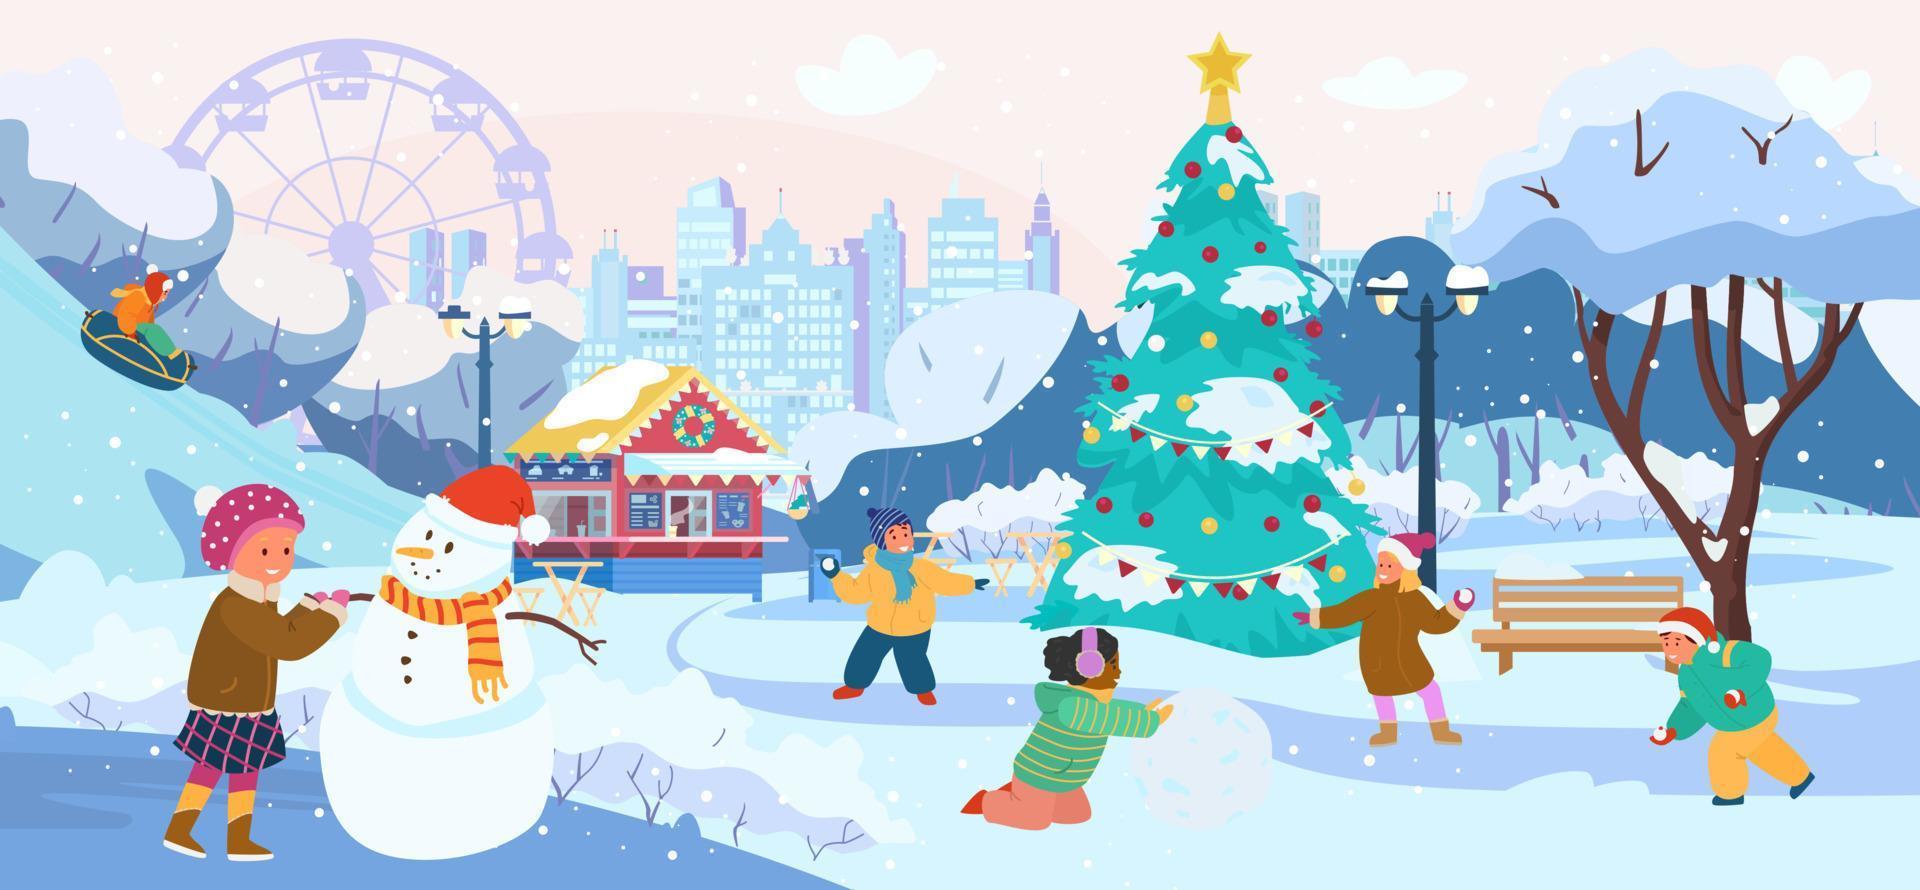 vinter parklandskap med barn som leker snöbollar, gör snögubbe, rider snöslangar. parkcafé, stadssiluett, julgran, snöiga träd. platt vektorillustration. vektor